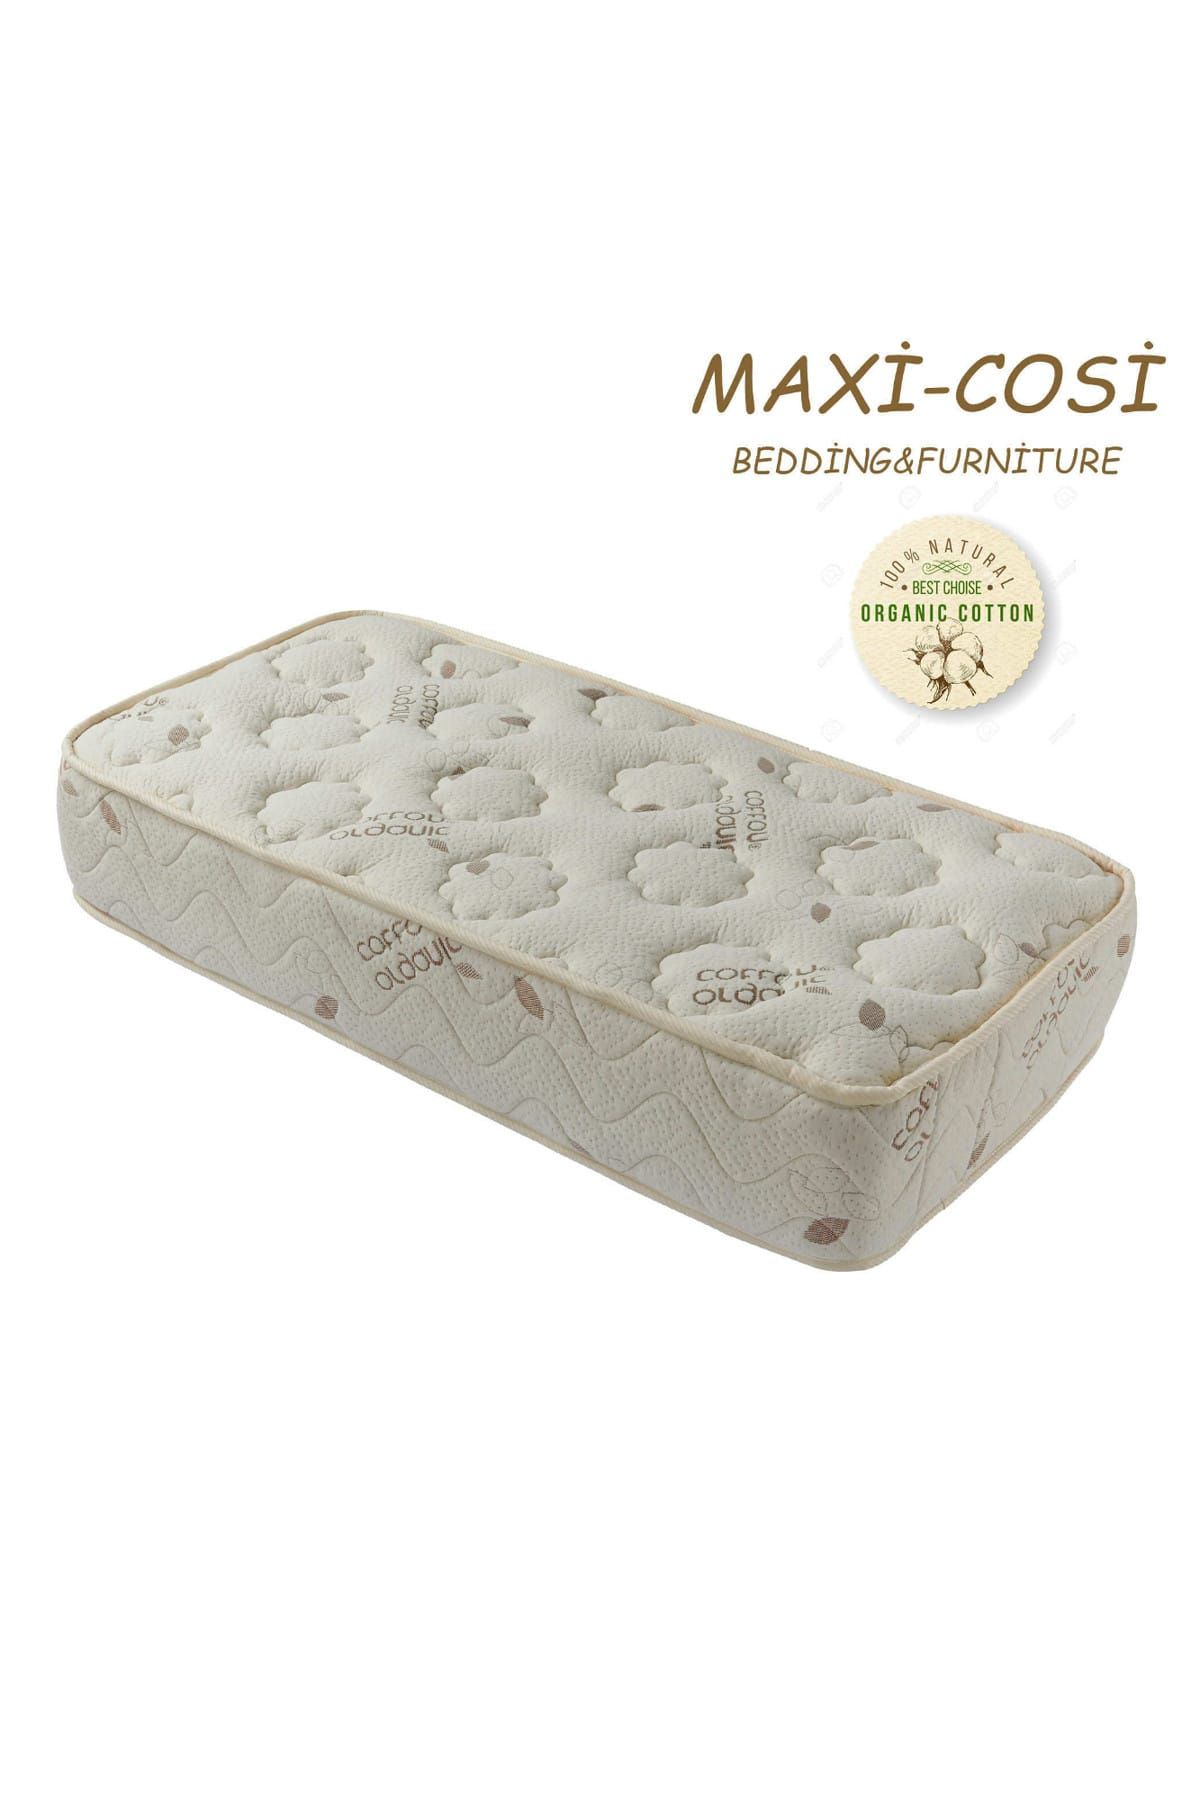 Maxi-Cosi Maxi-Cosi Organik Cotton 100x190 Cm ortopedik Yaylı Yatak